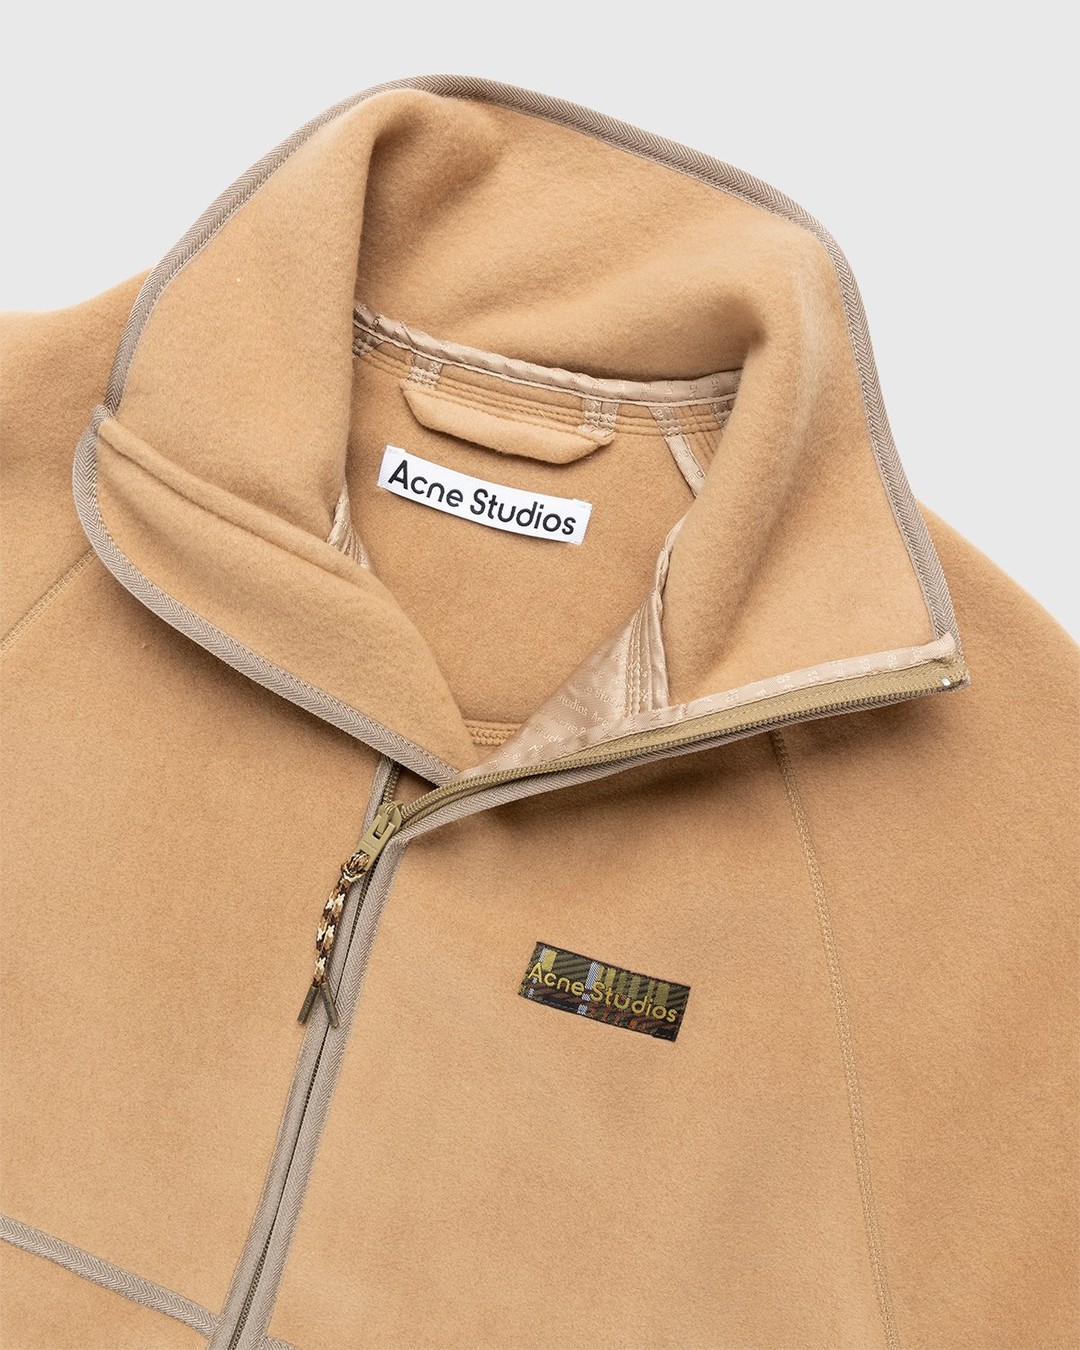 Acne Studios – Polar Fleece Jacket Camel Brown - Outerwear - Brown - Image 4